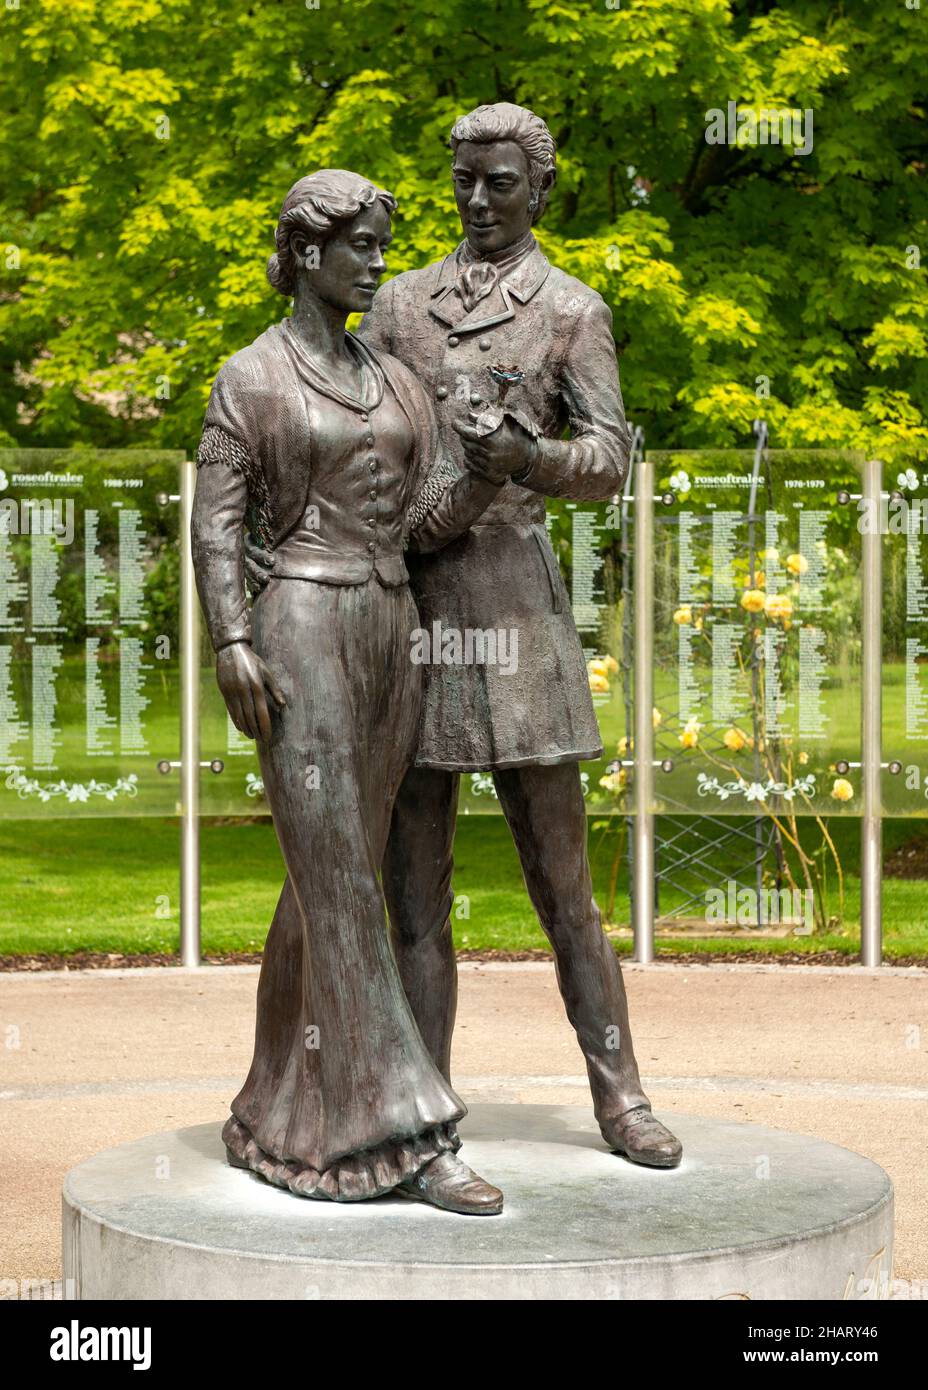 Bronzestatue in der Rose von Tralee von Jeanne Rynhart, die ein tanzendes Paar im Tralee Stadtpark, Tralee, County Kerry, Irland, darstellt Stockfoto